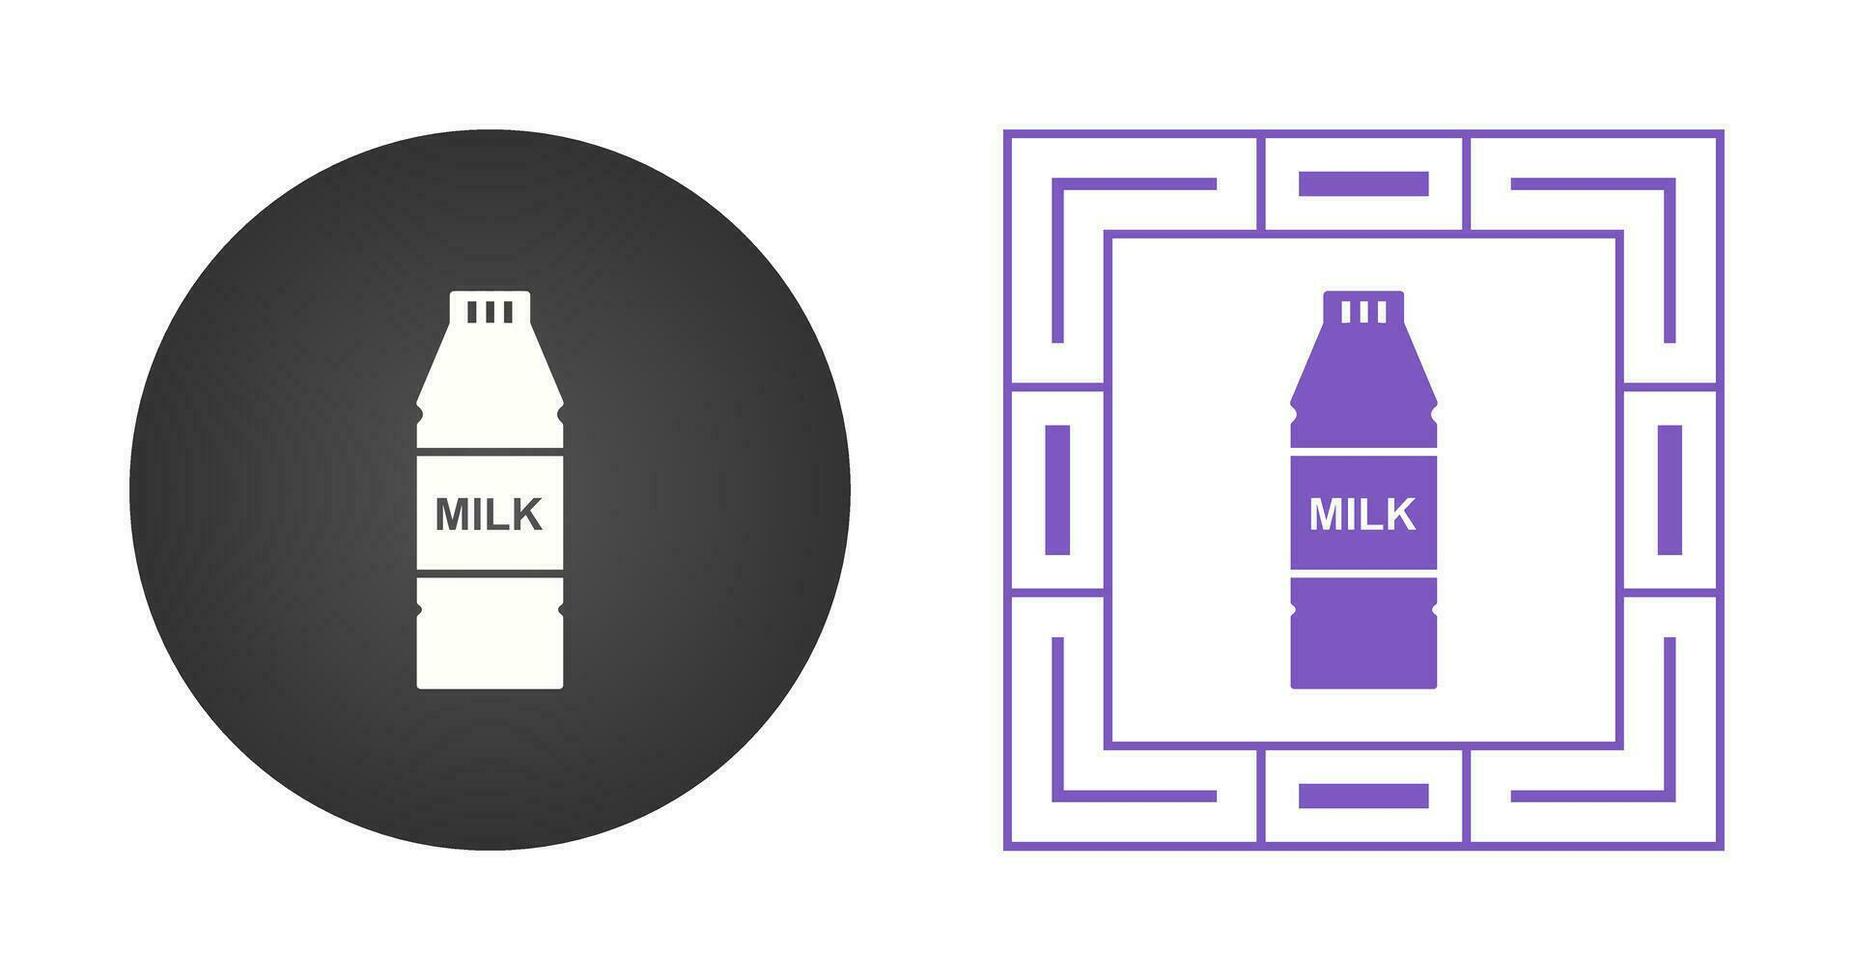 ícone de vetor de garrafa de leite